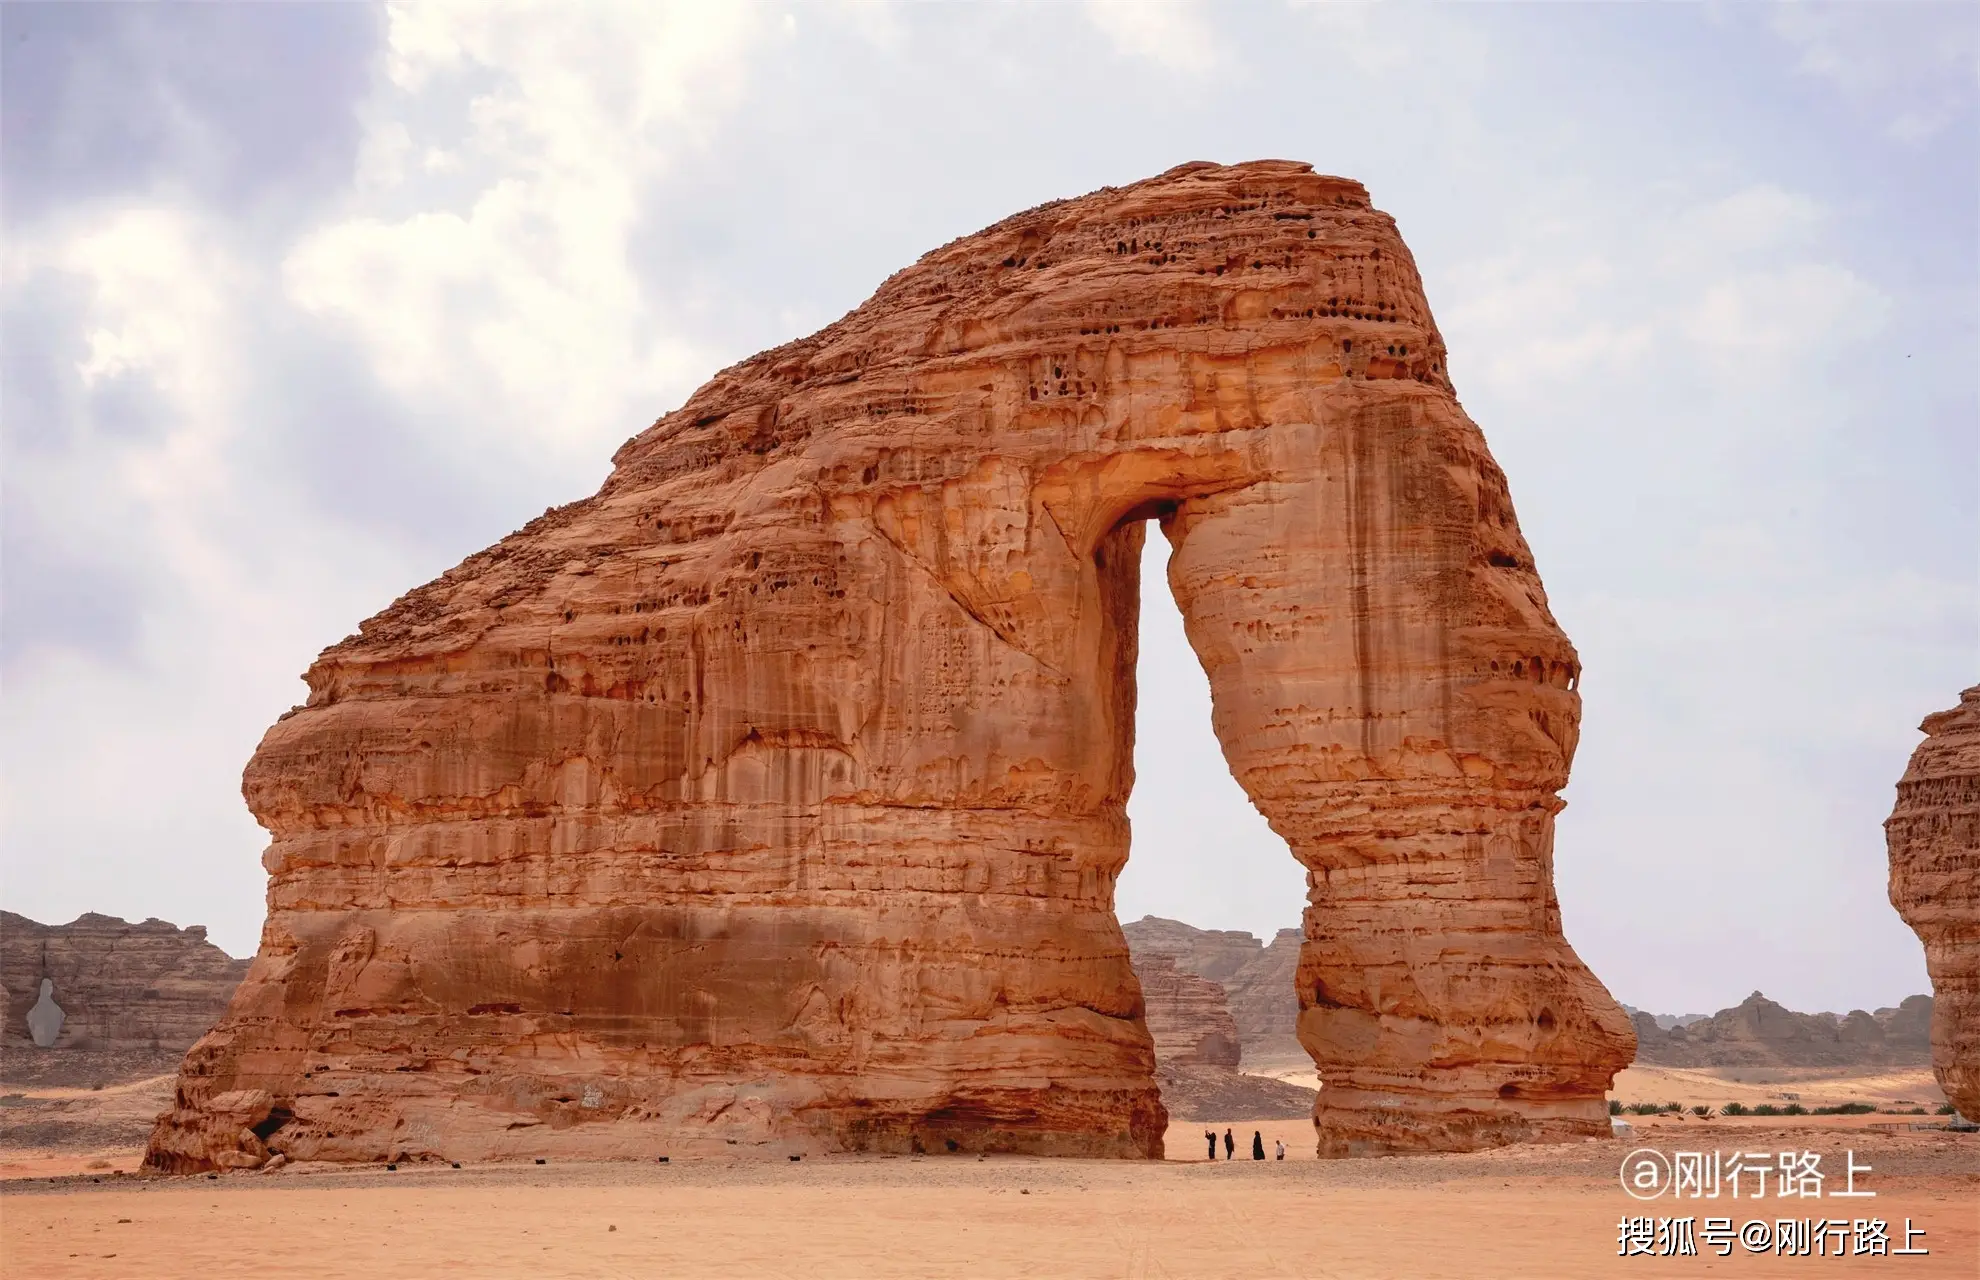 一望无垠的沙漠中 感受到沙特古老的文化和传统